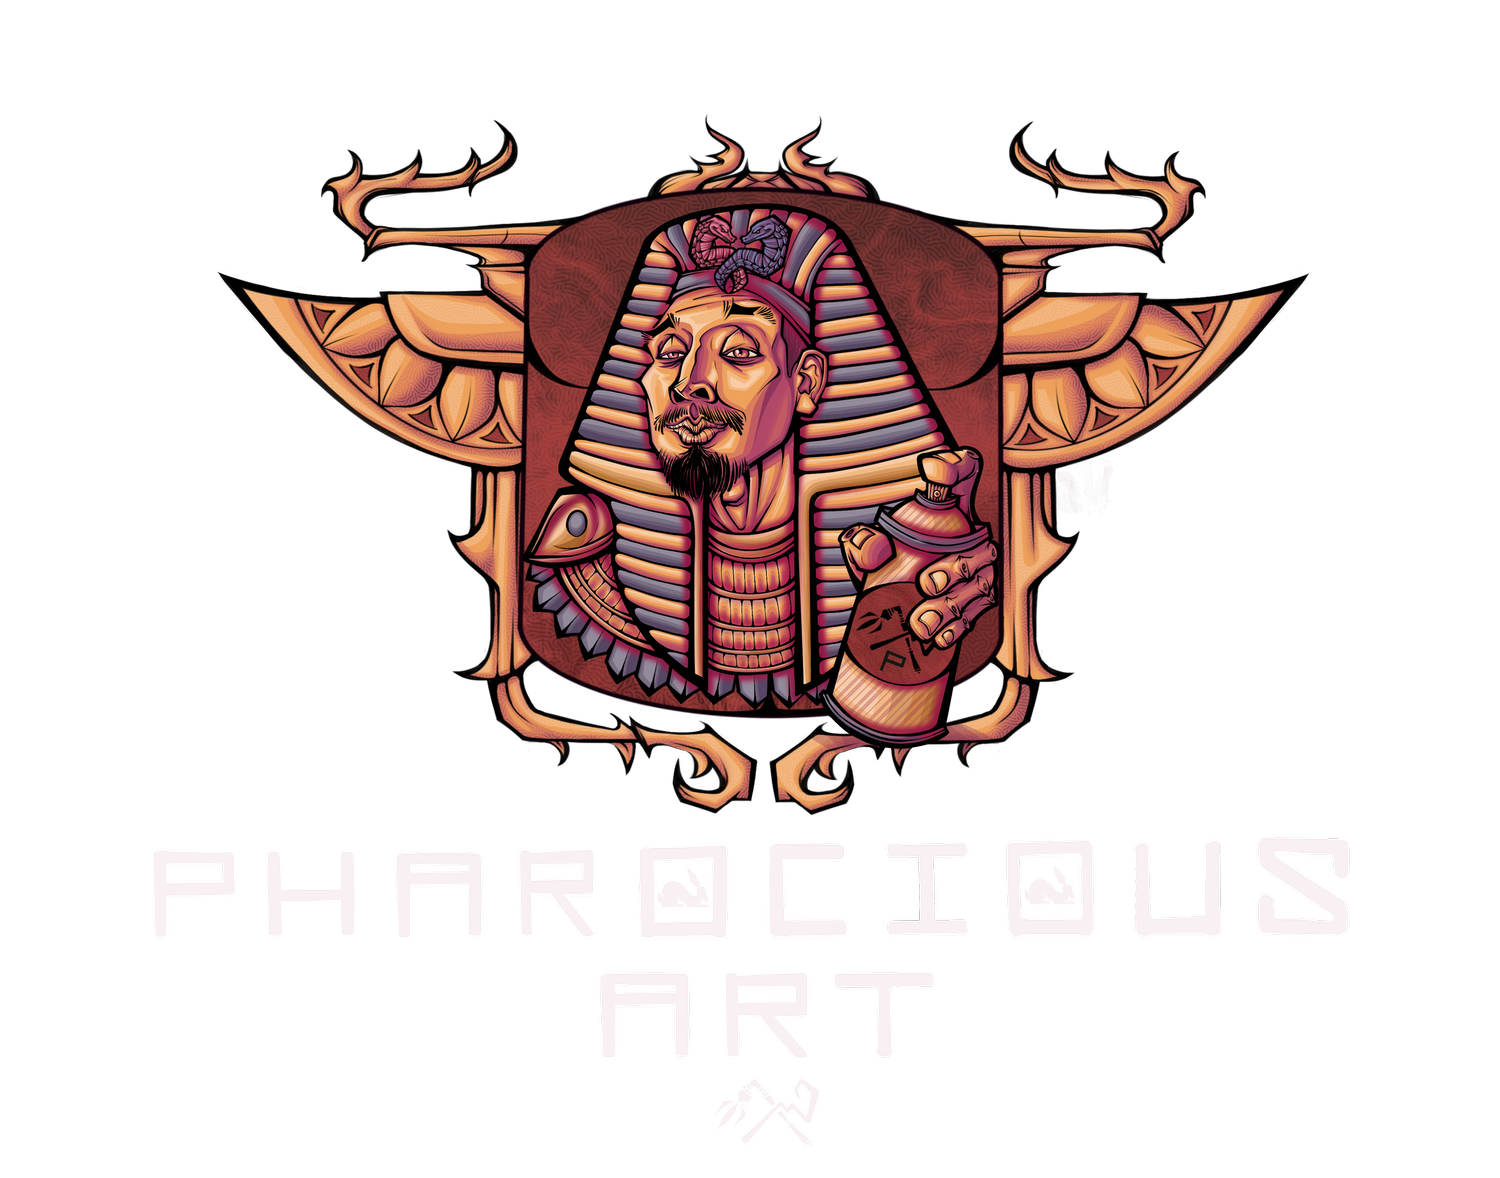 Pharocious Art